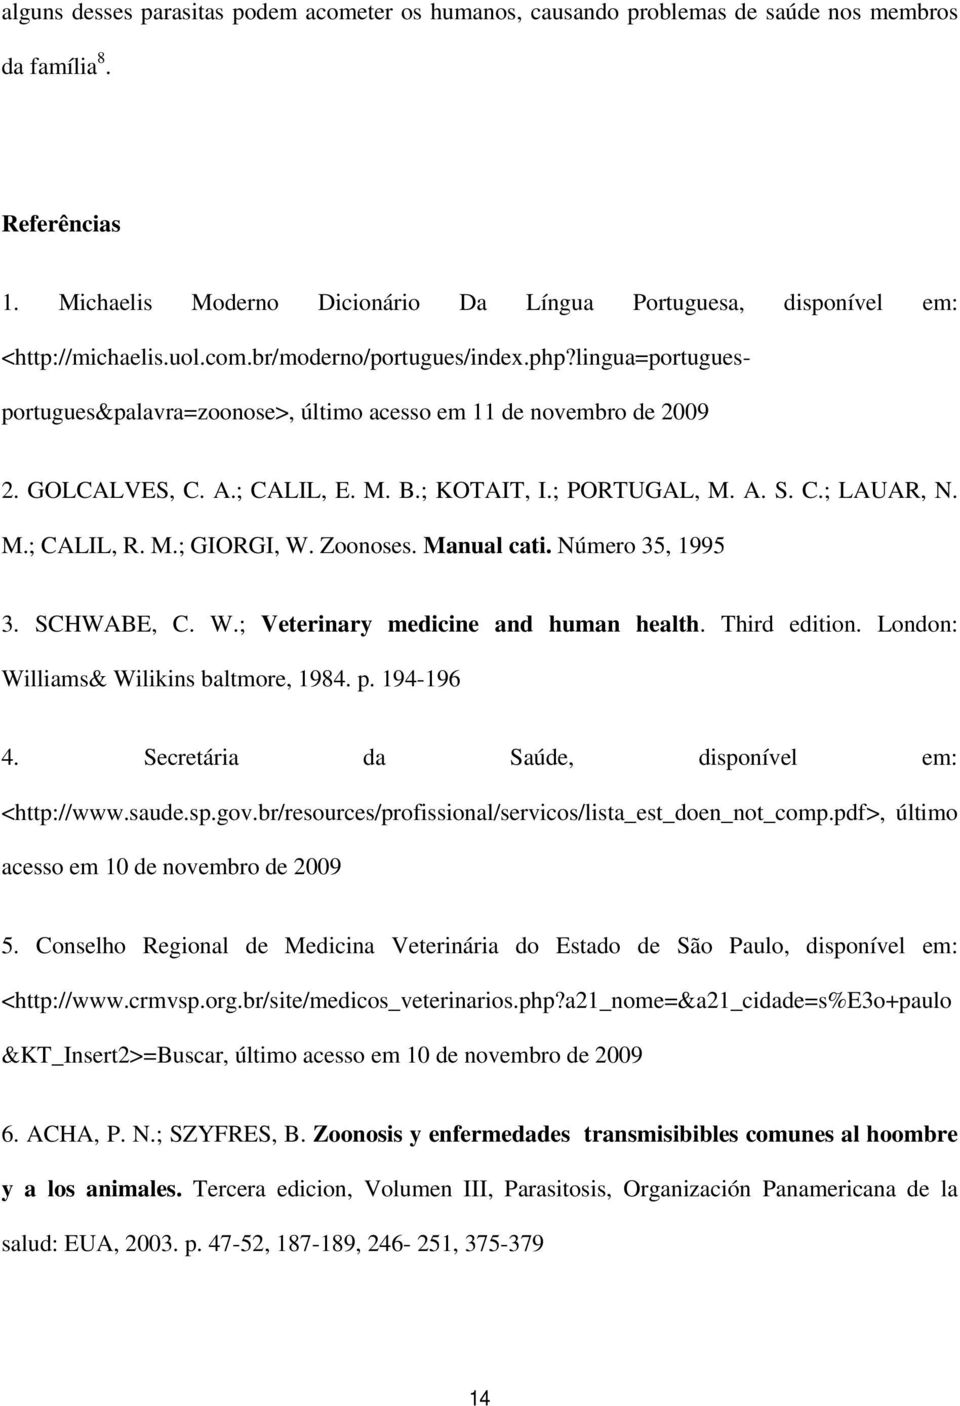 lingua=portuguesportugues&palavra=zoonose>, último acesso em 11 de novembro de 2009 2. GOLCALVES, C. A.; CALIL, E. M. B.; KOTAIT, I.; PORTUGAL, M. A. S. C.; LAUAR, N. M.; CALIL, R. M.; GIORGI, W.